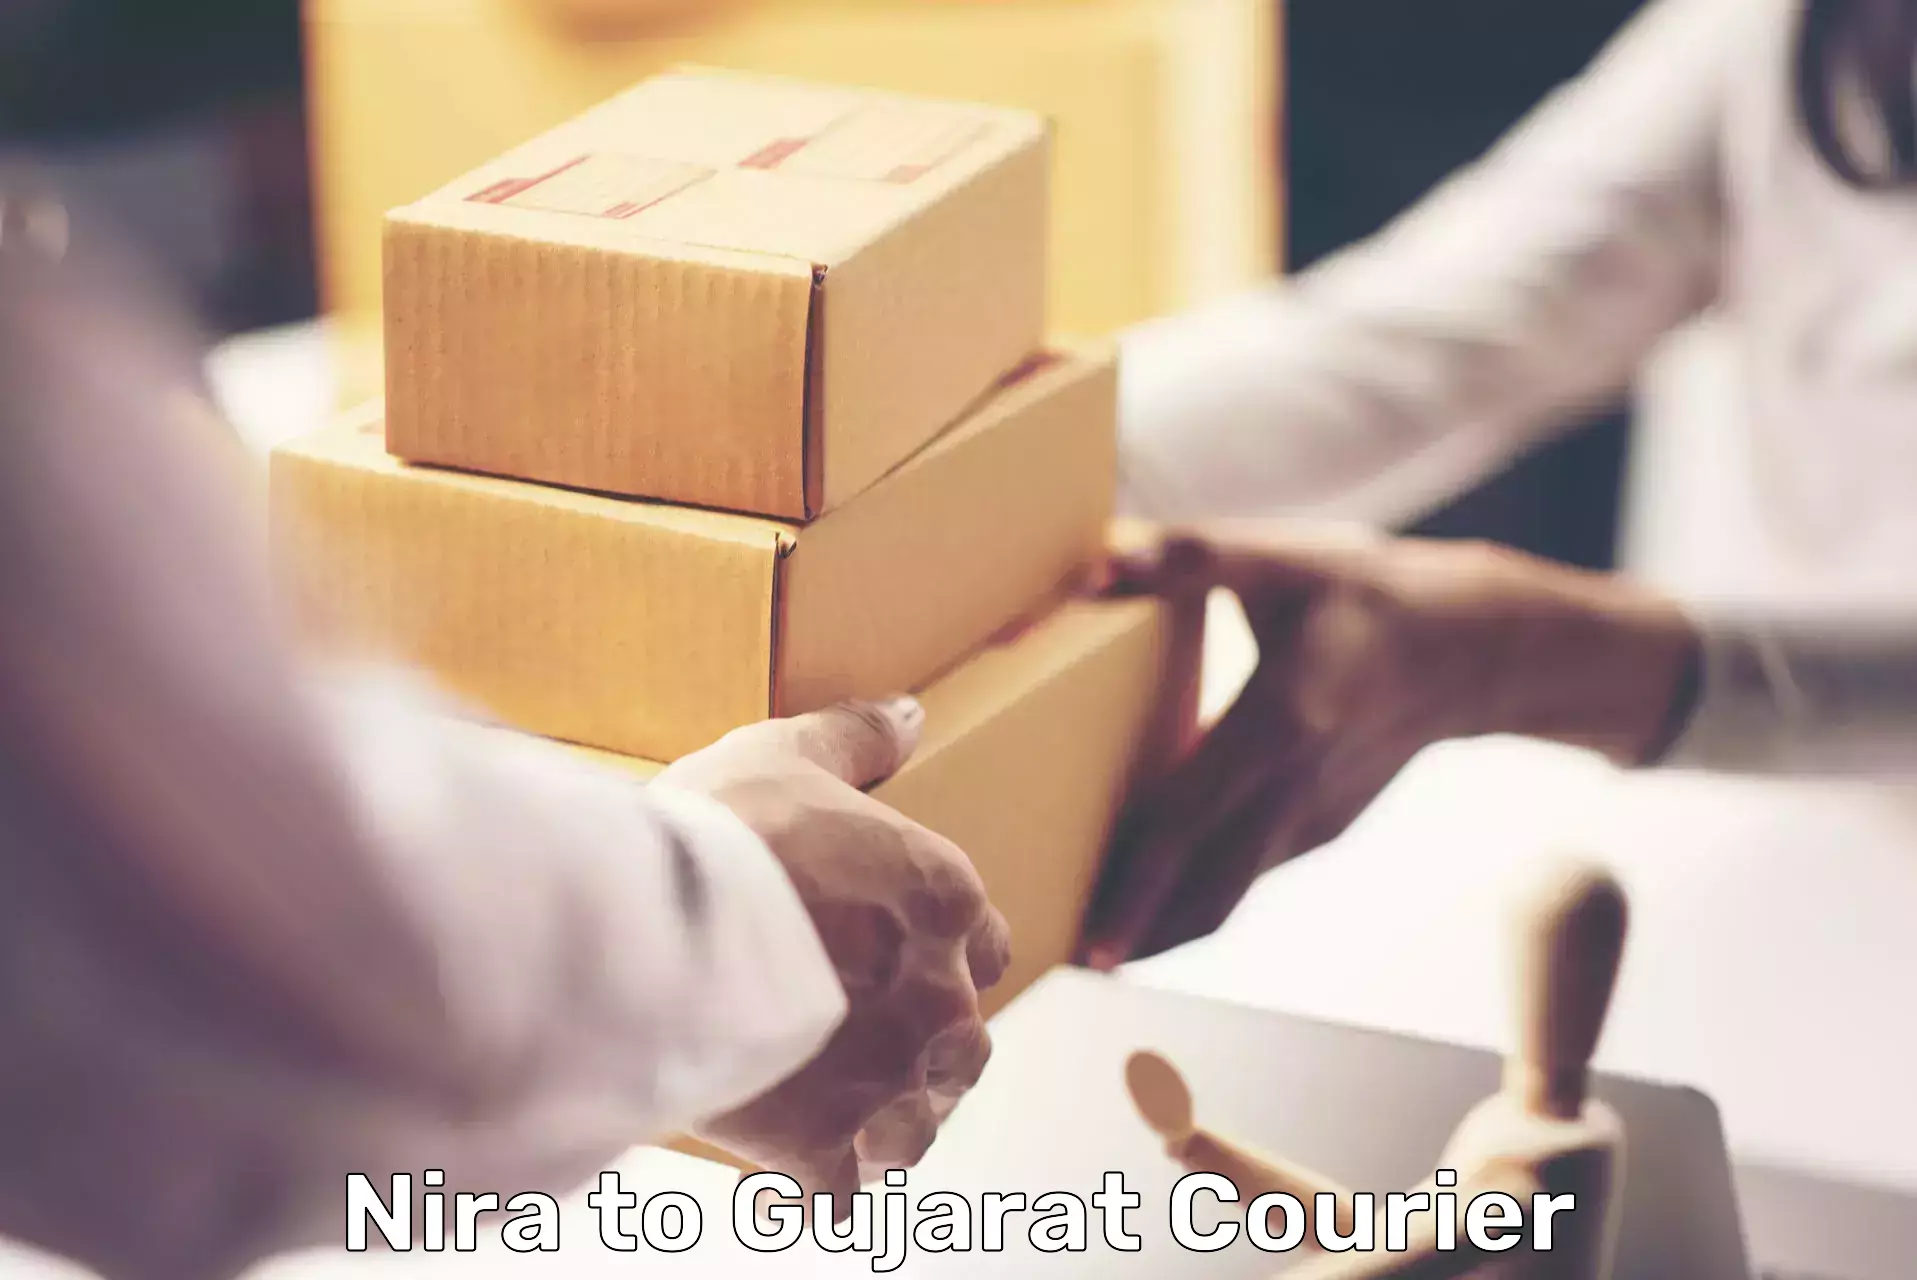 Affordable parcel service Nira to Vyara